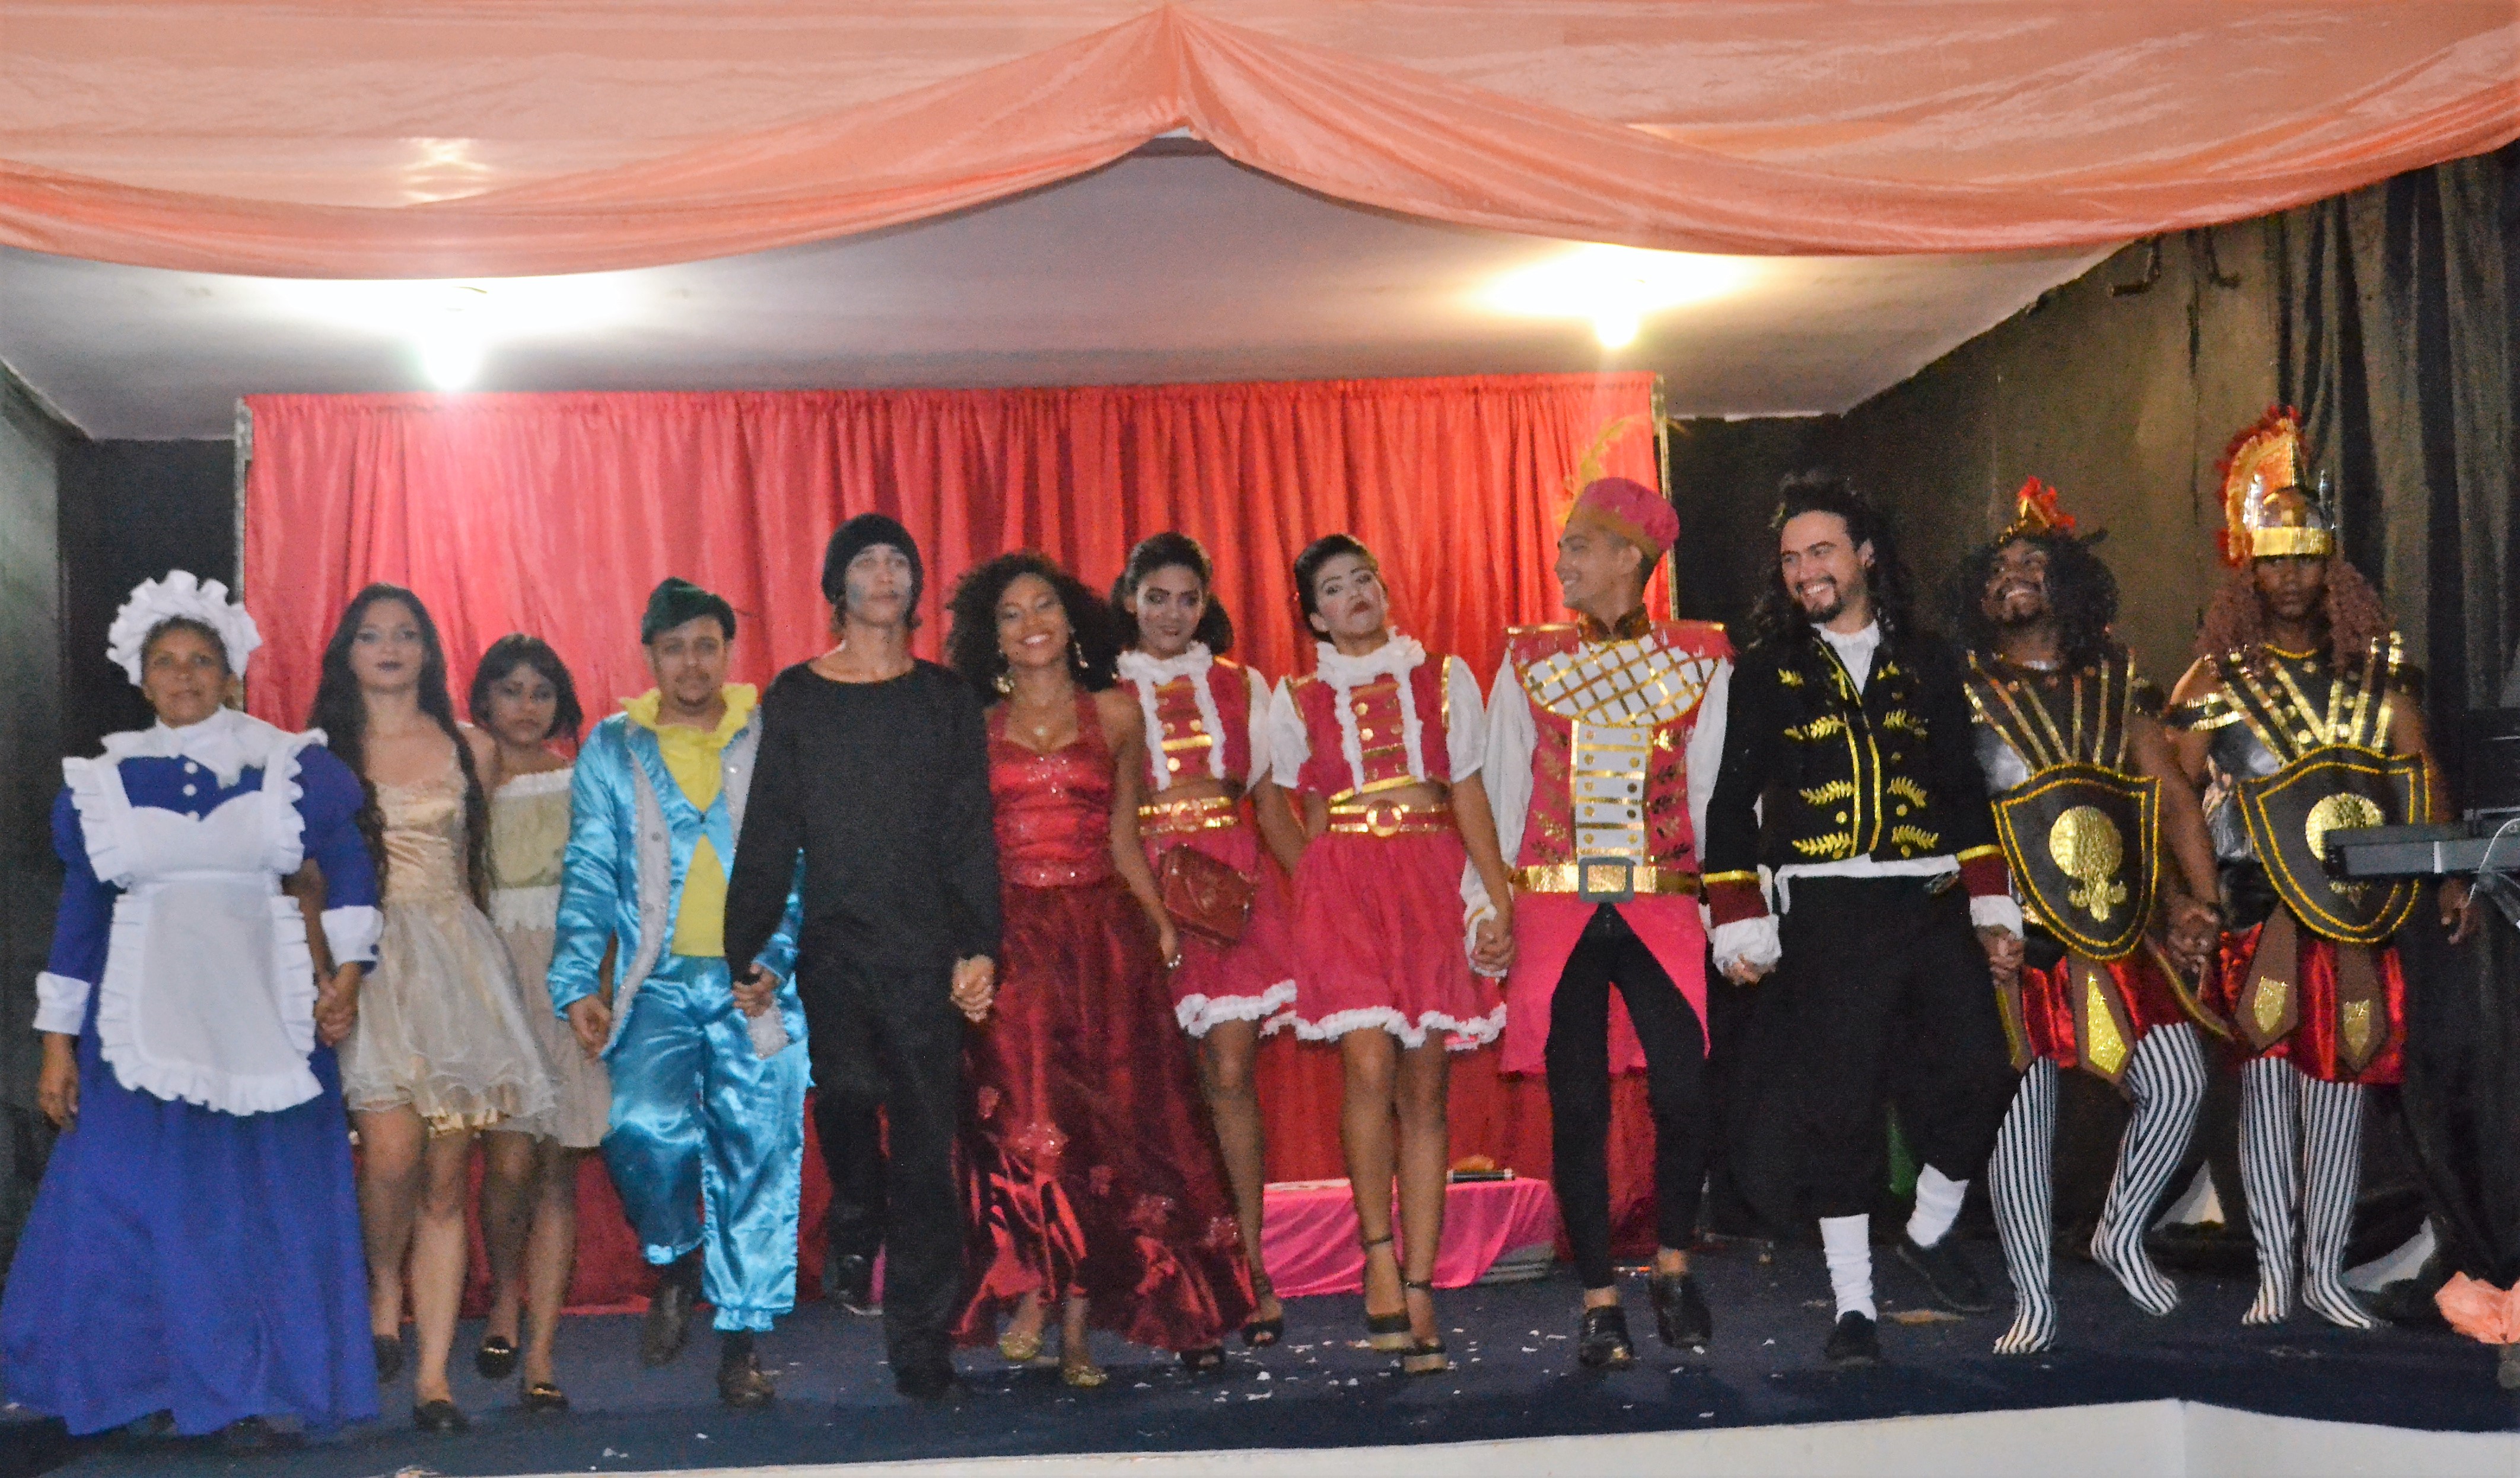  Companhia de teatro “Outro Nível” apresenta peça em Parauapebas